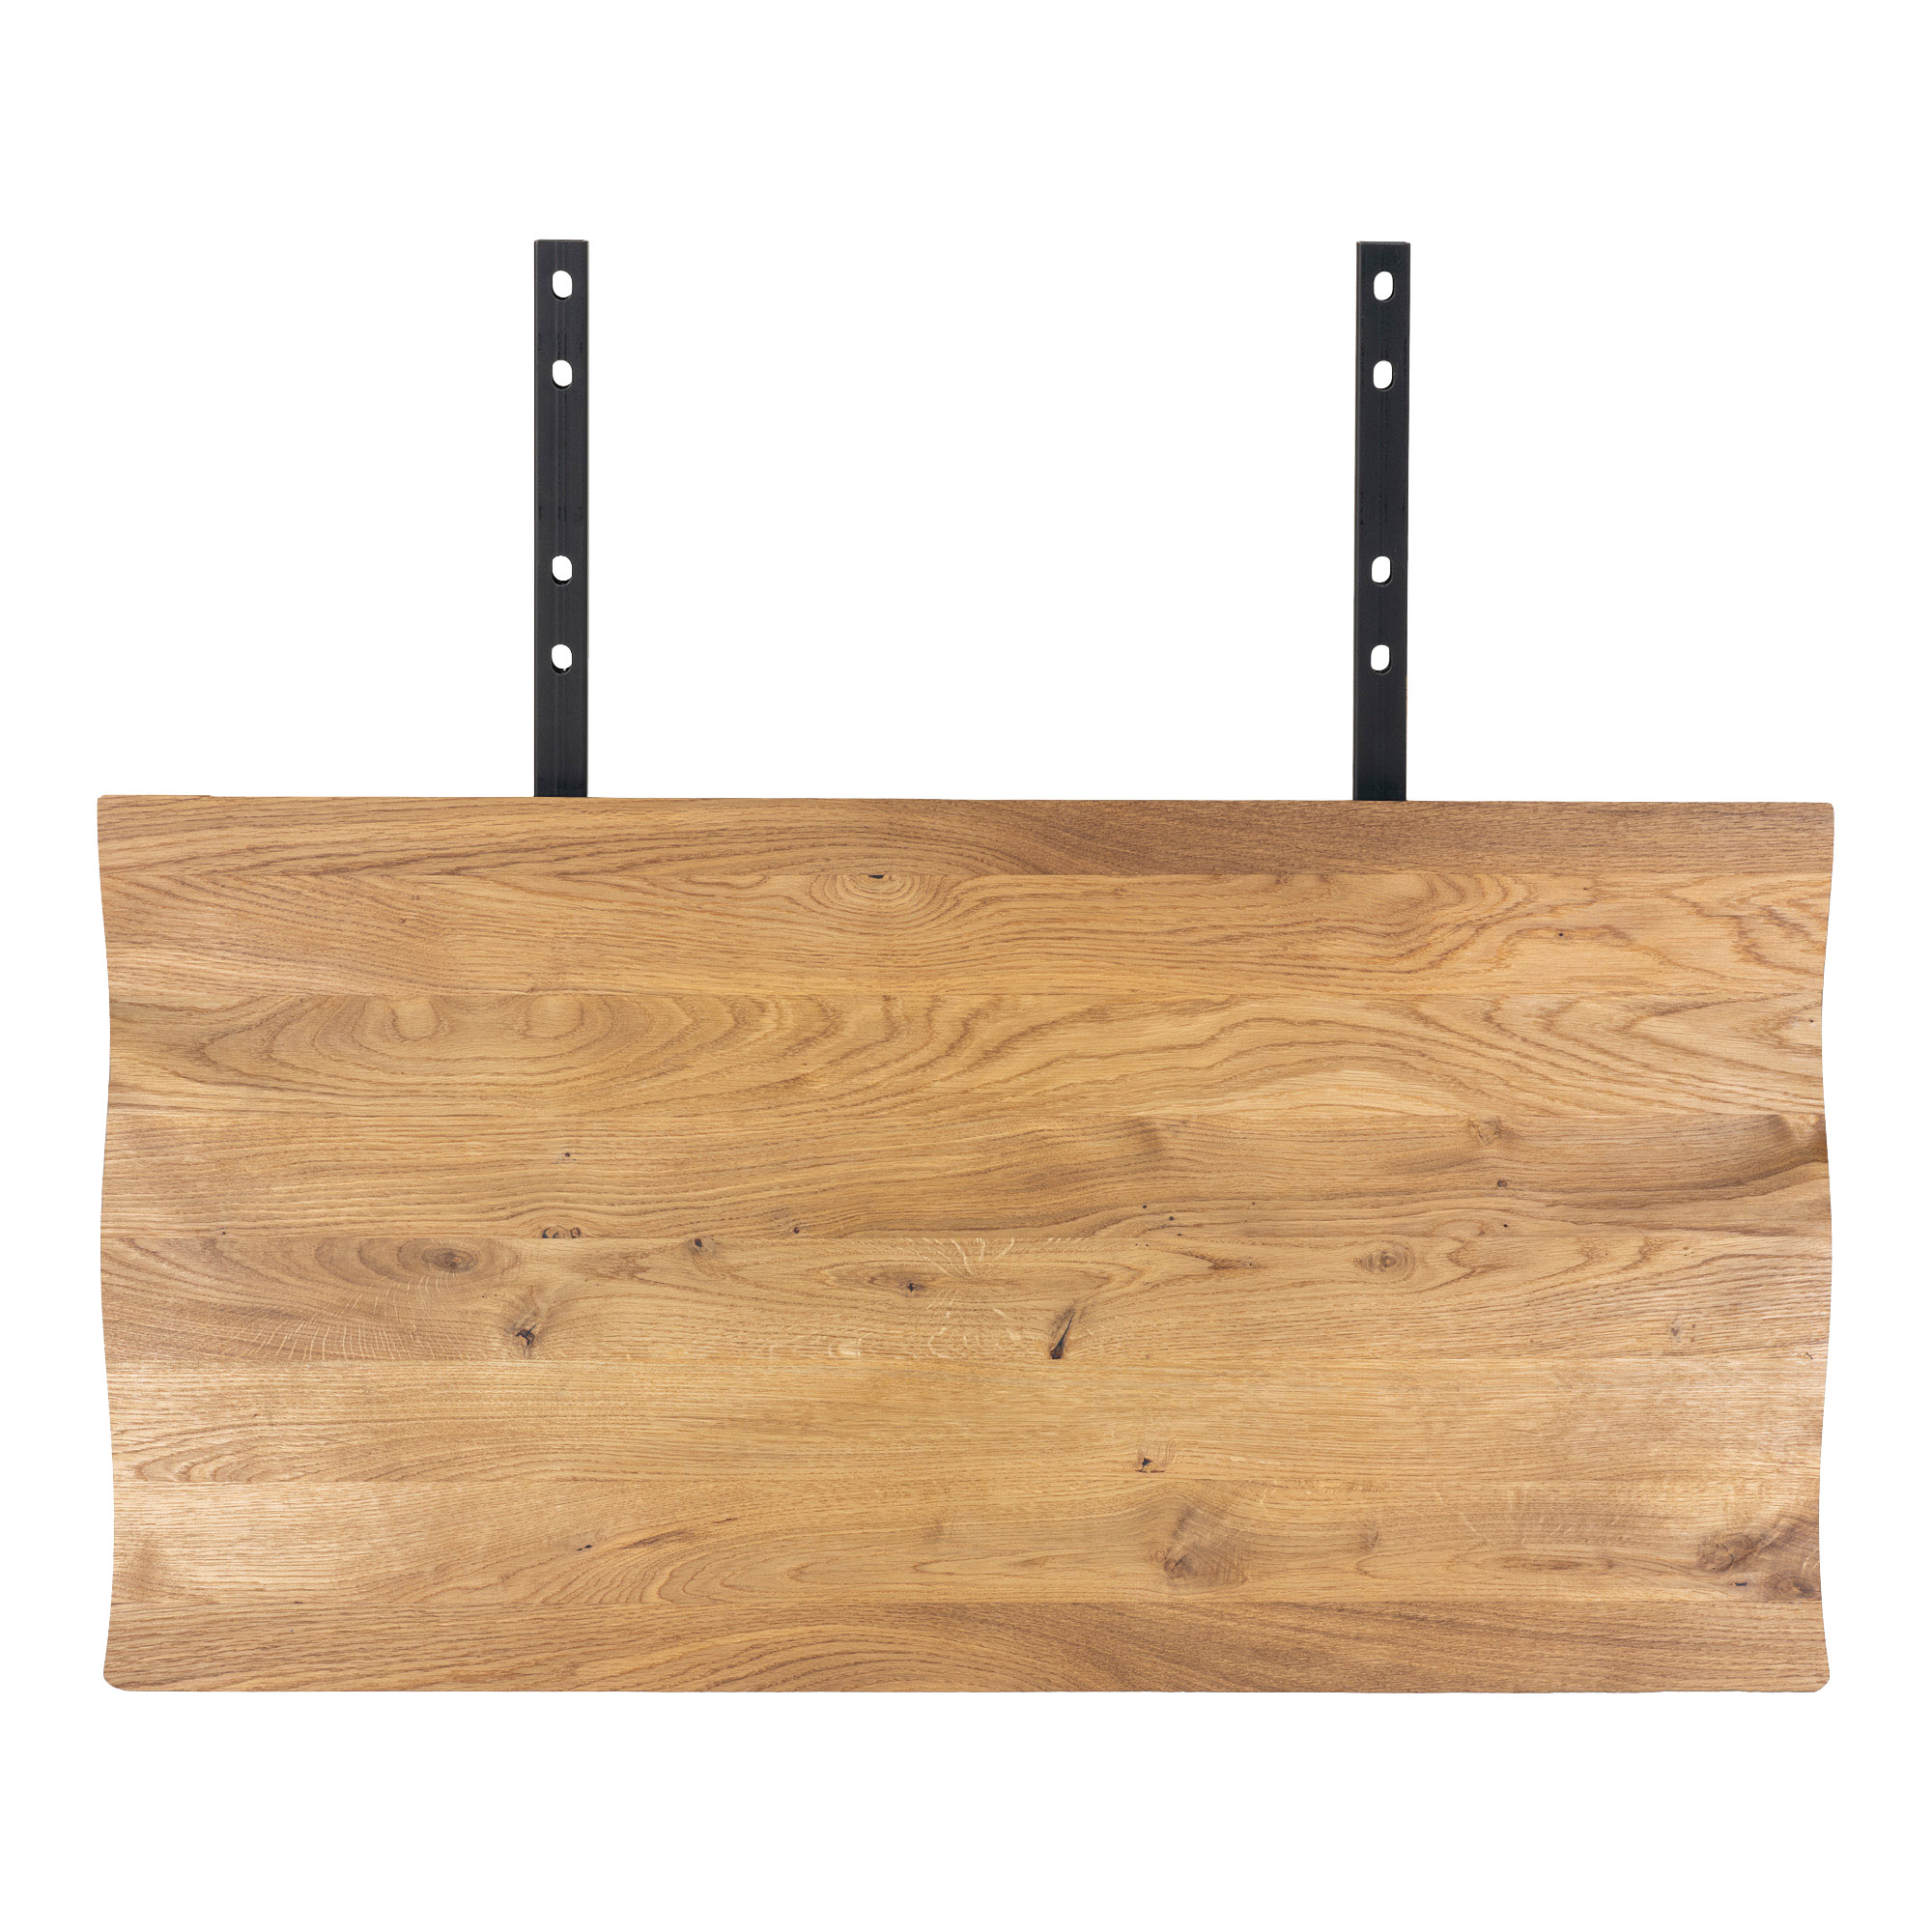 9: Juva - Spisebord i olieret  eg, 95 x 200 cm, med eller uden tillægsplader Med 2 tillægsplader